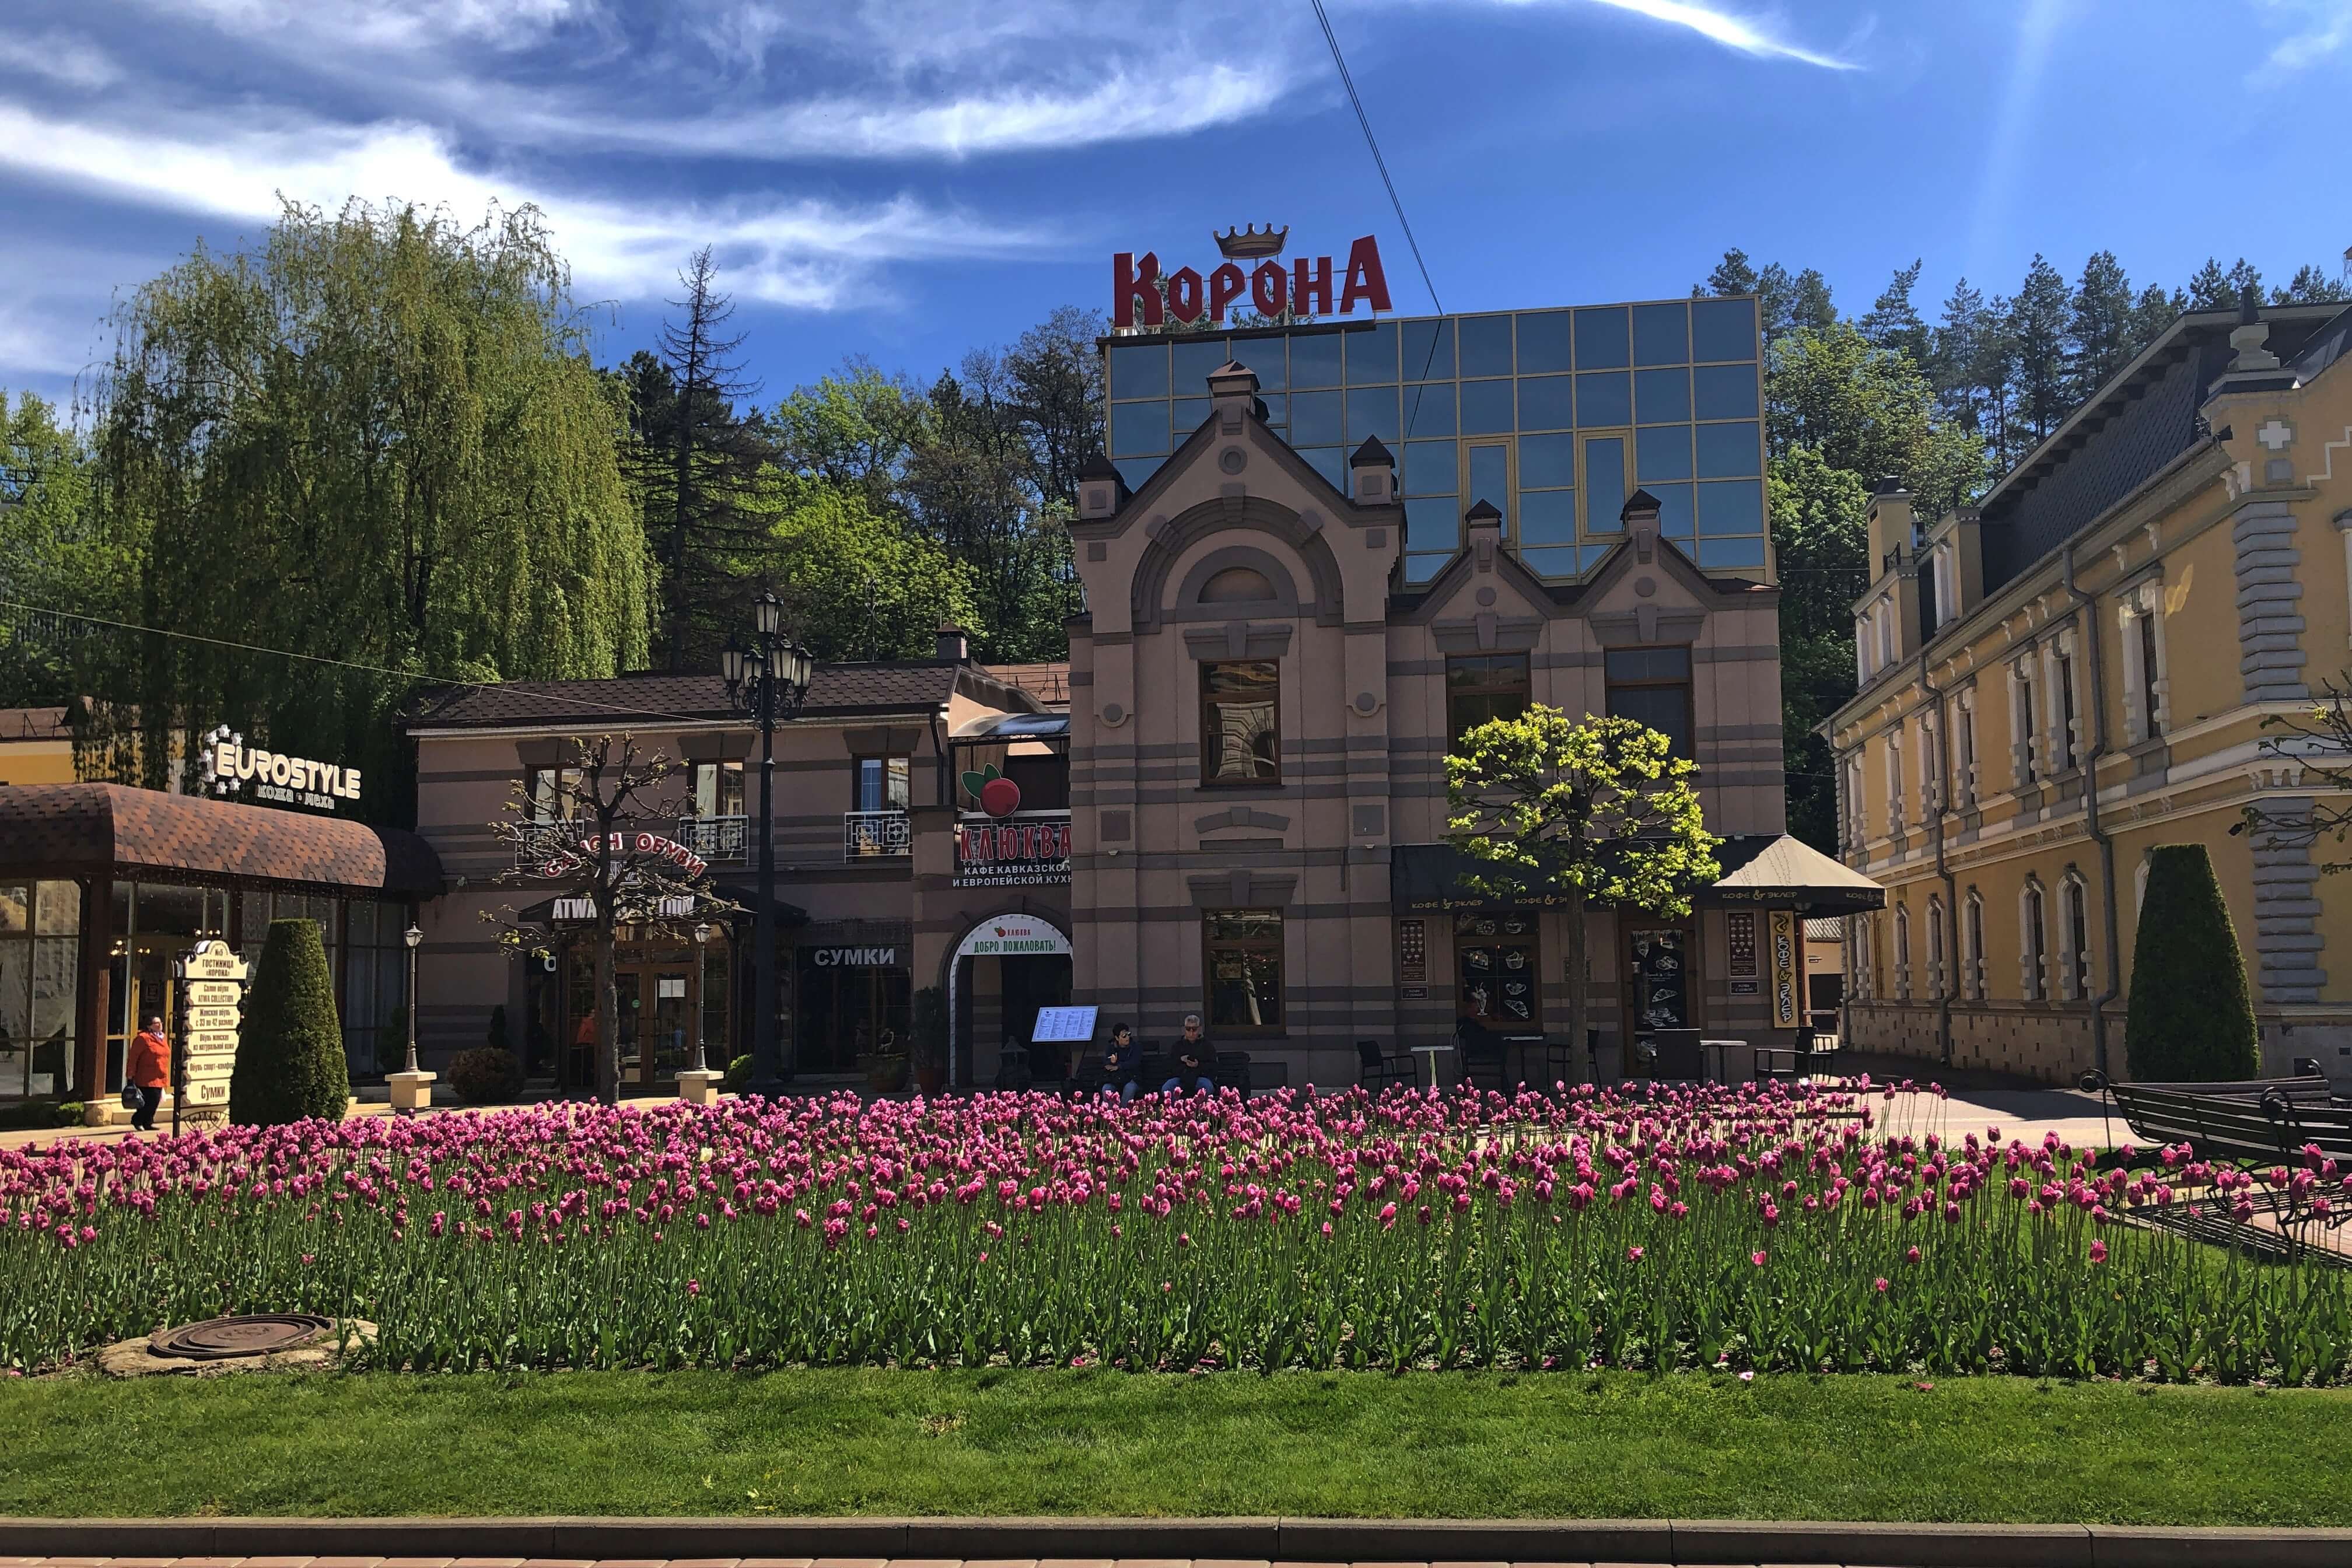 Перед отелем высажена большая клумба с розовыми тюльпанами.